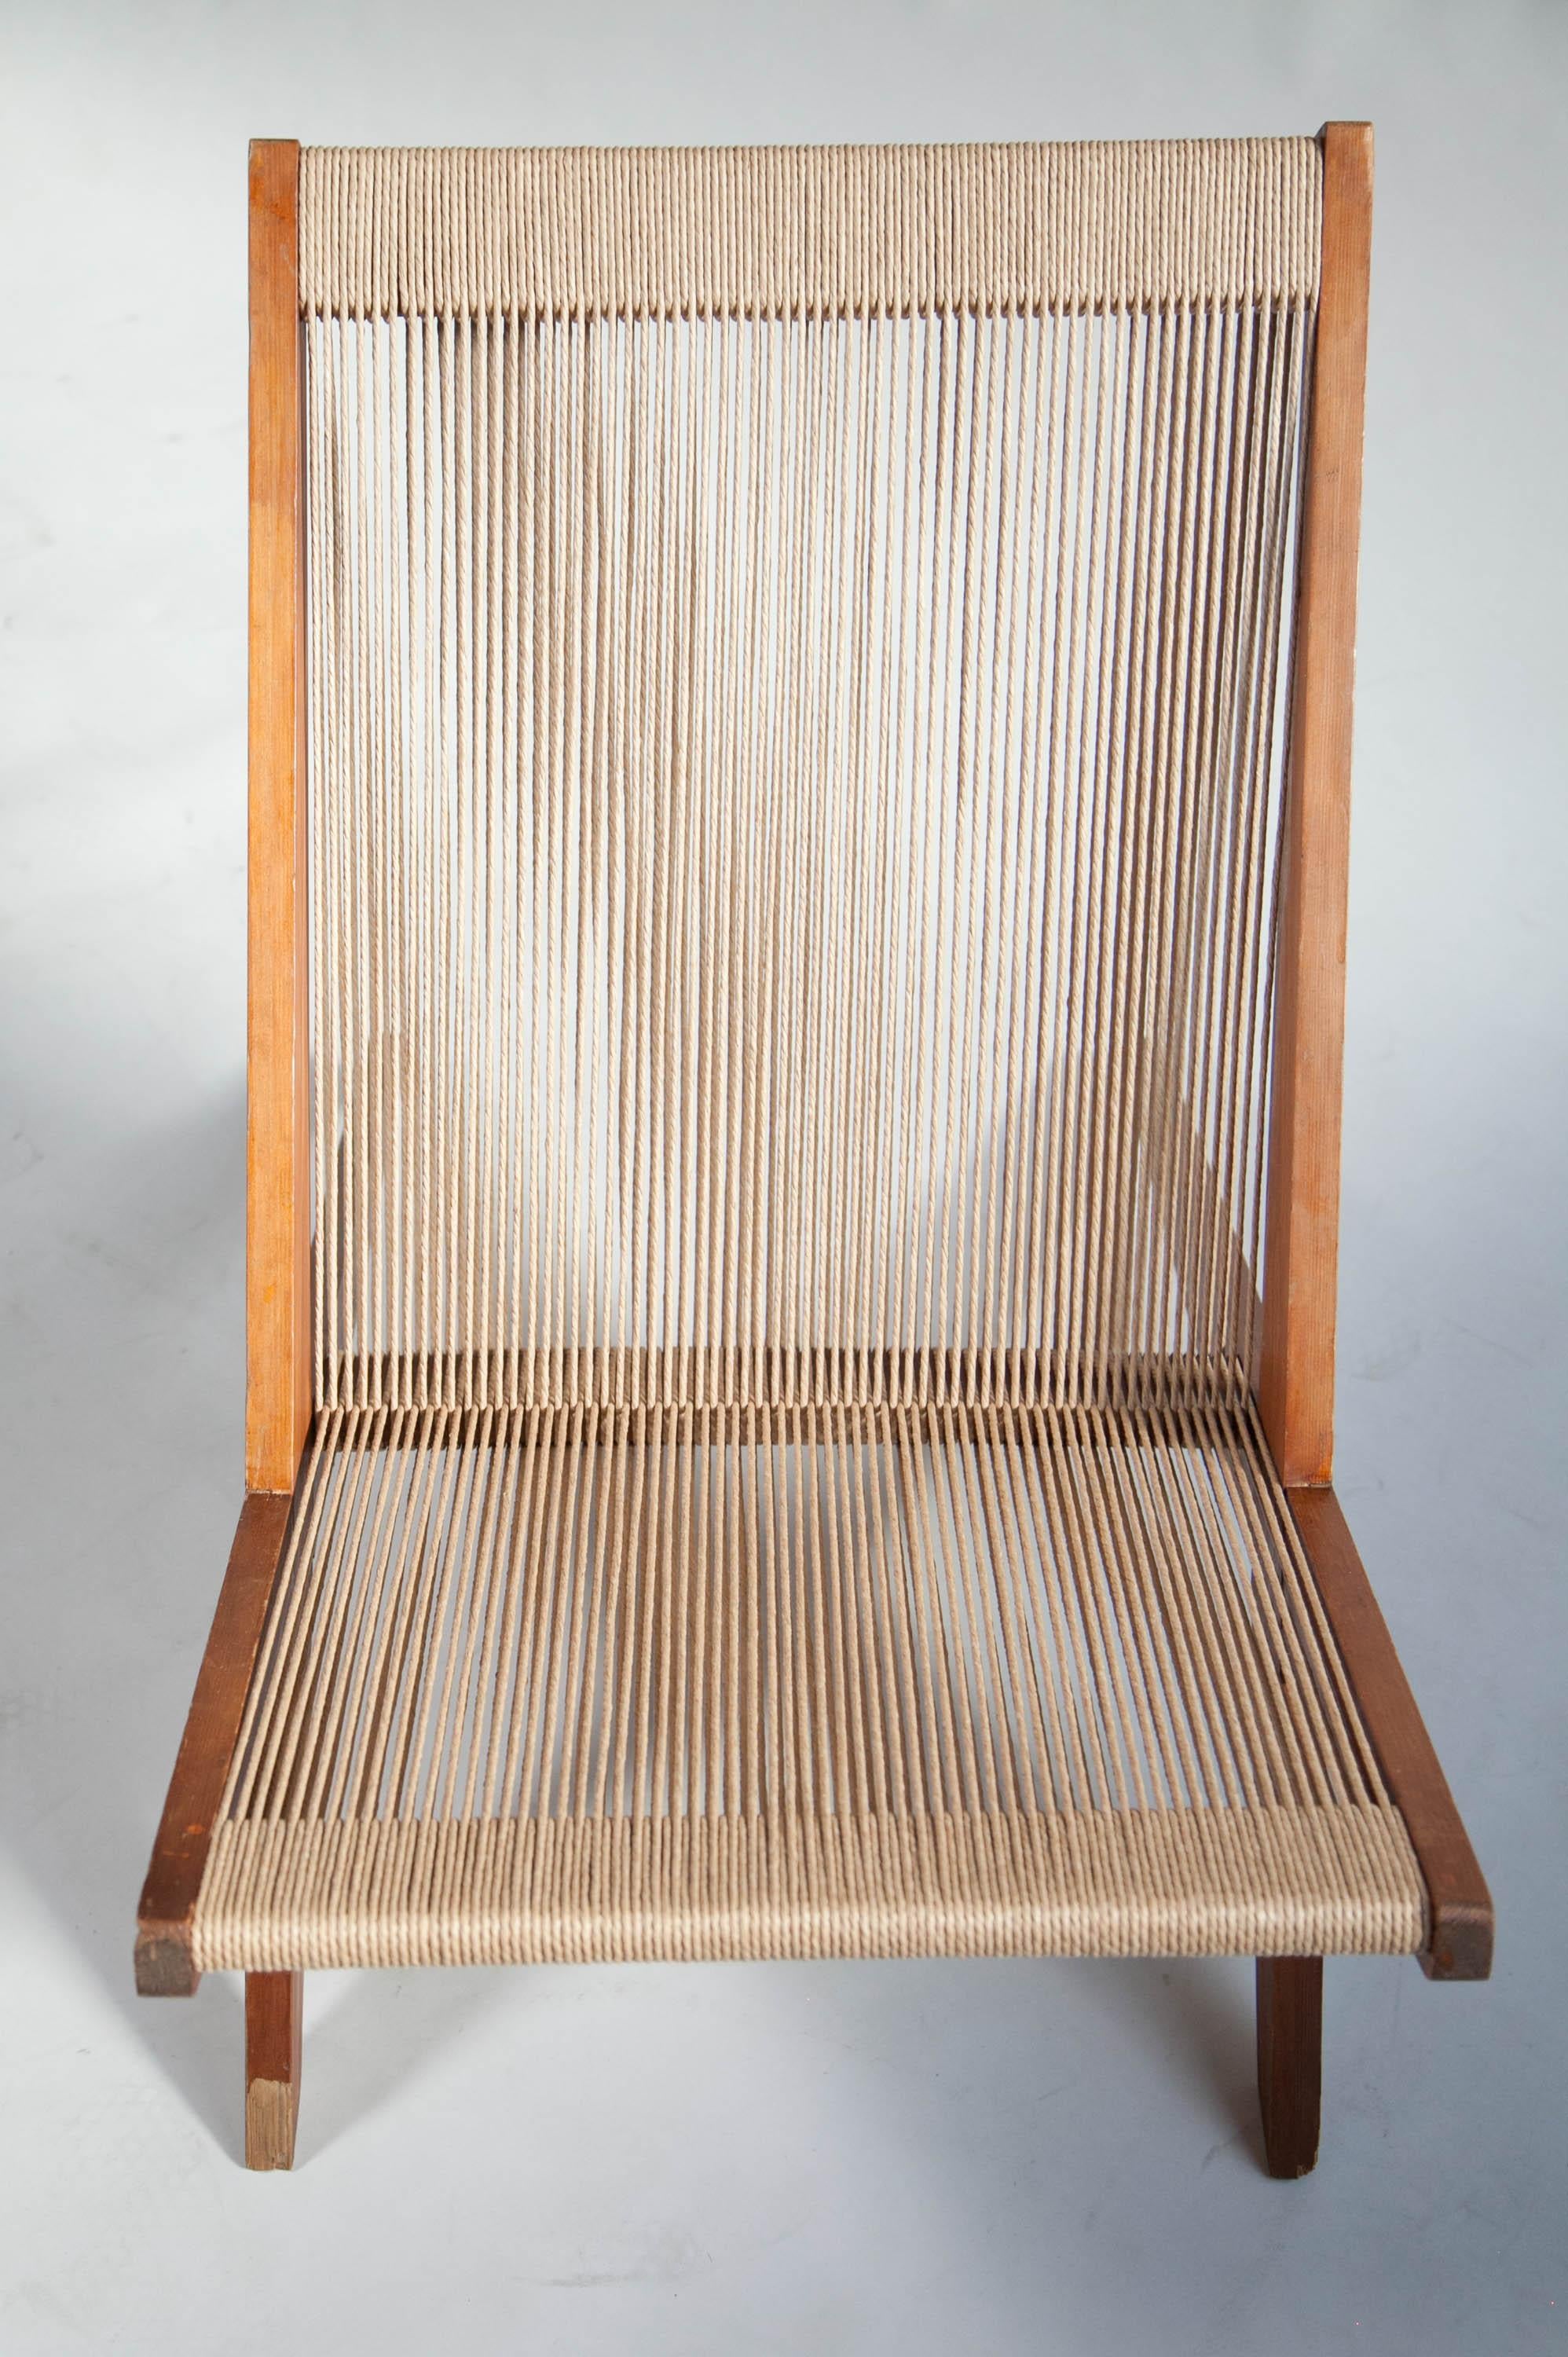 Rope Chair in Pine, Attributed to Poul Kjaerholm & Jørgen Høj, Denmark, 1960's For Sale 12